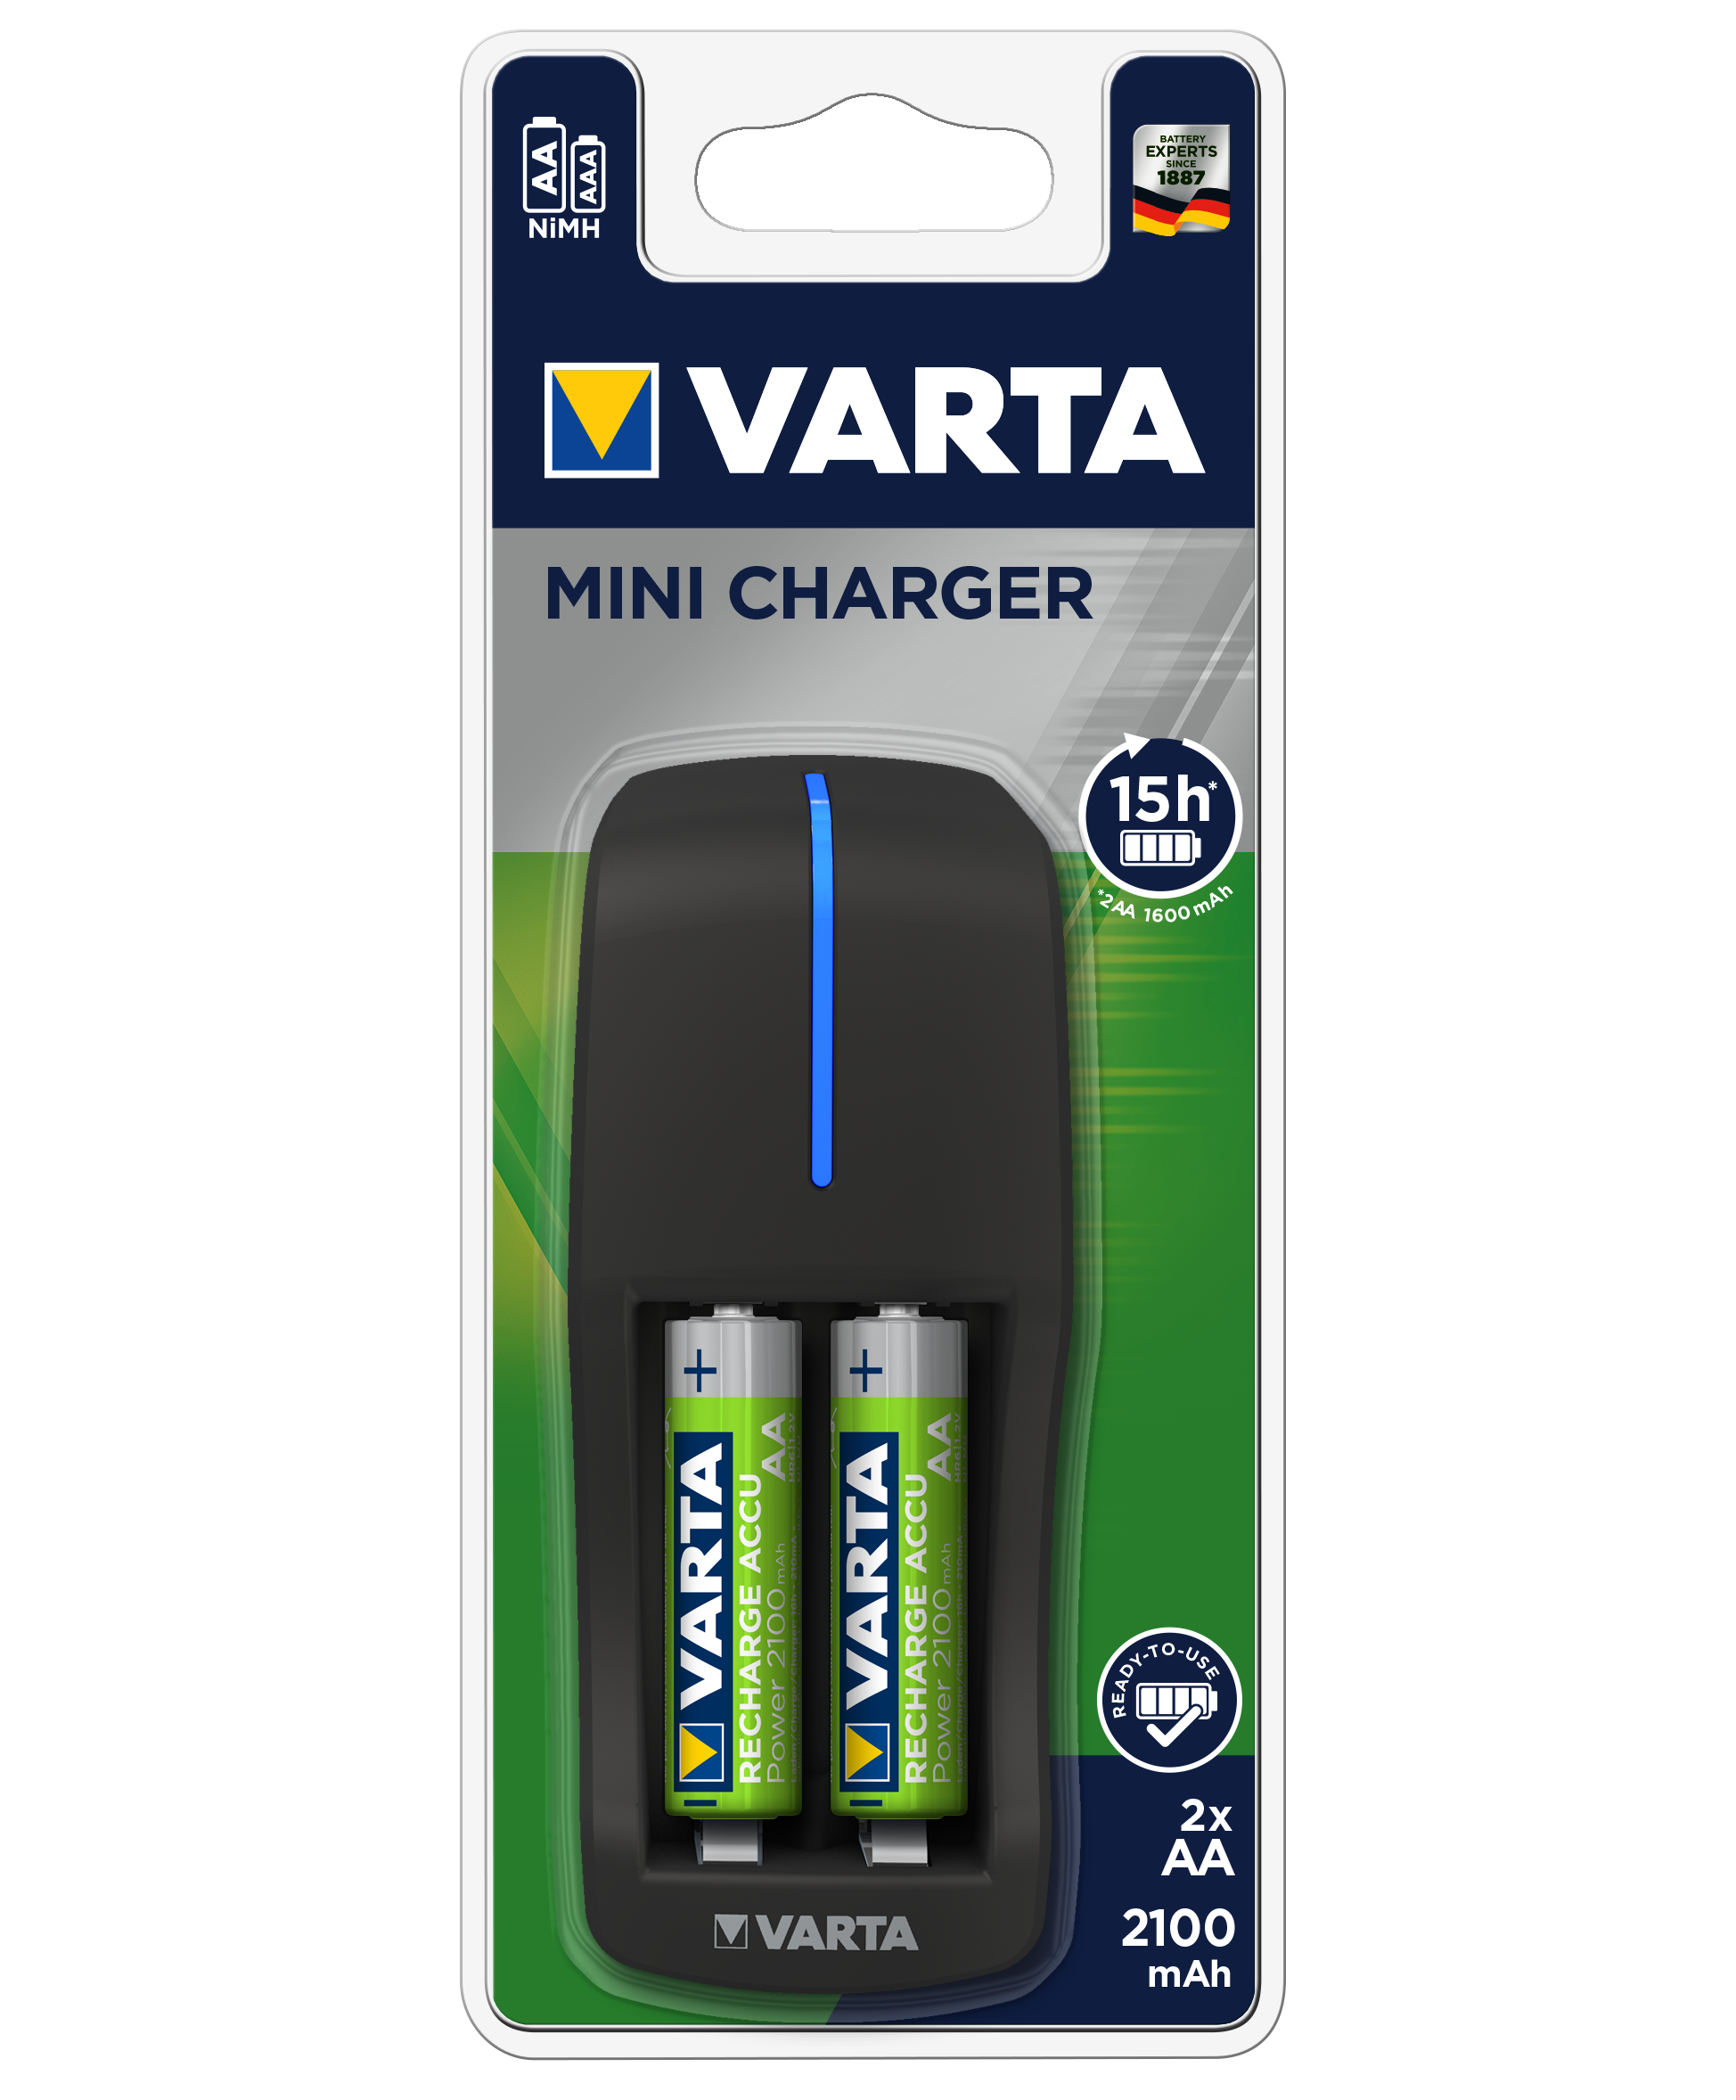 Зарядное ус-во VARTA Mini Charger 1-2 ААА/АА +2AA 2100mAh 15ч.